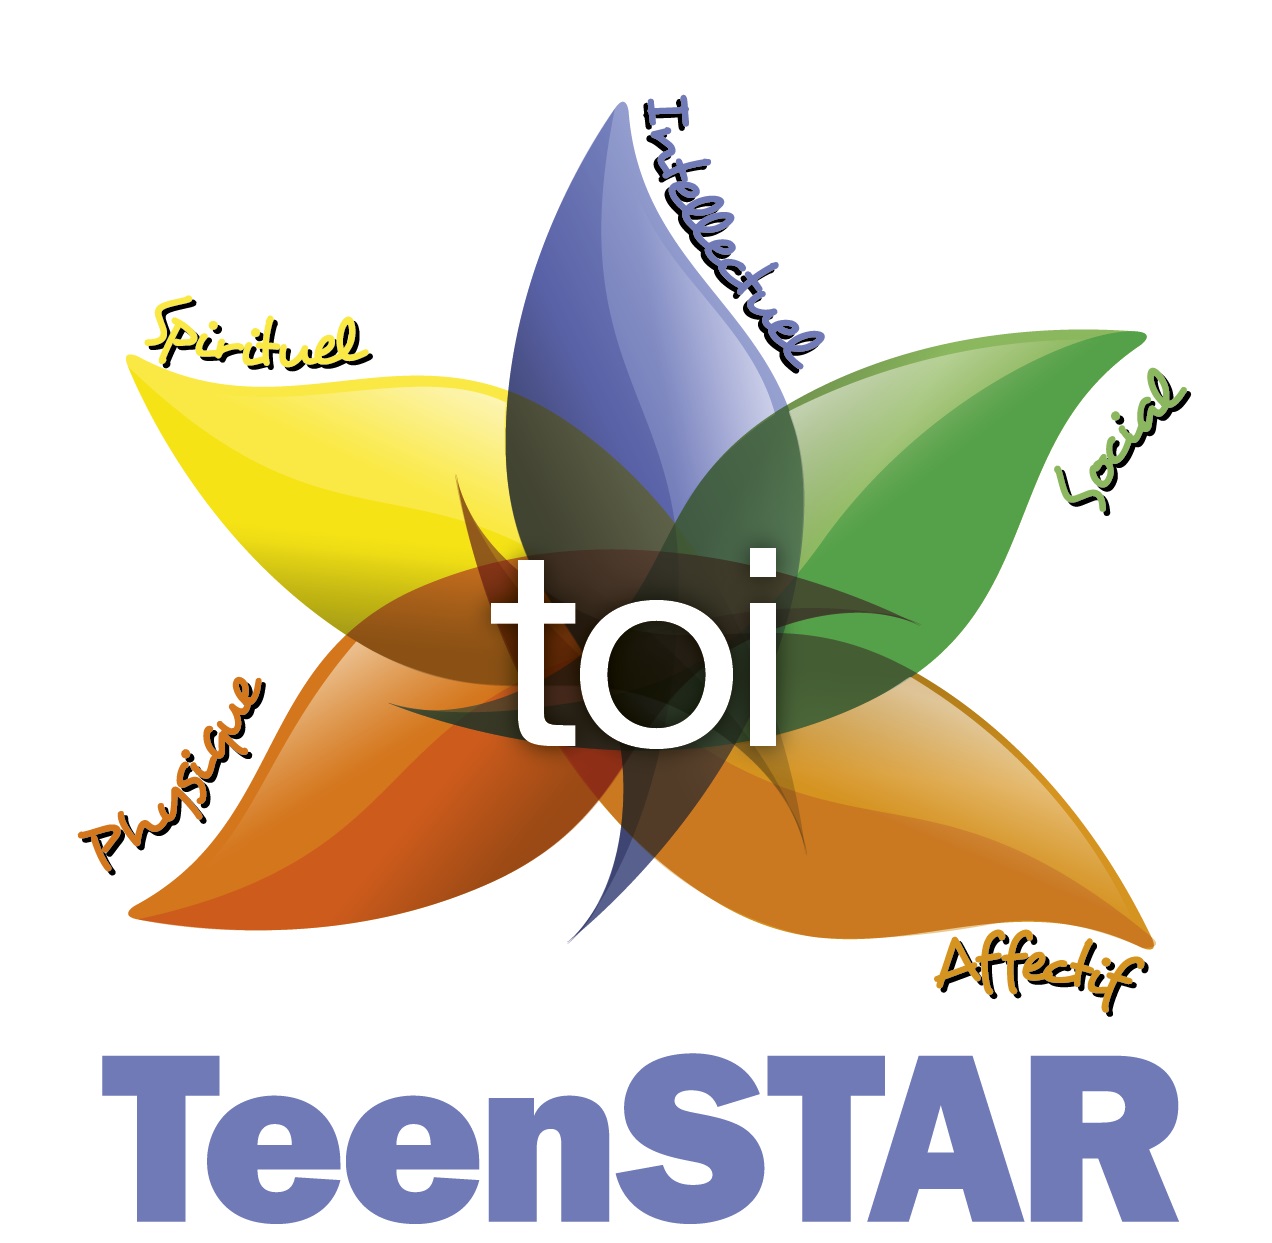 Tu te poses 1001 questions sur l’amour et la sexualité ? – Formation TeenSTAR